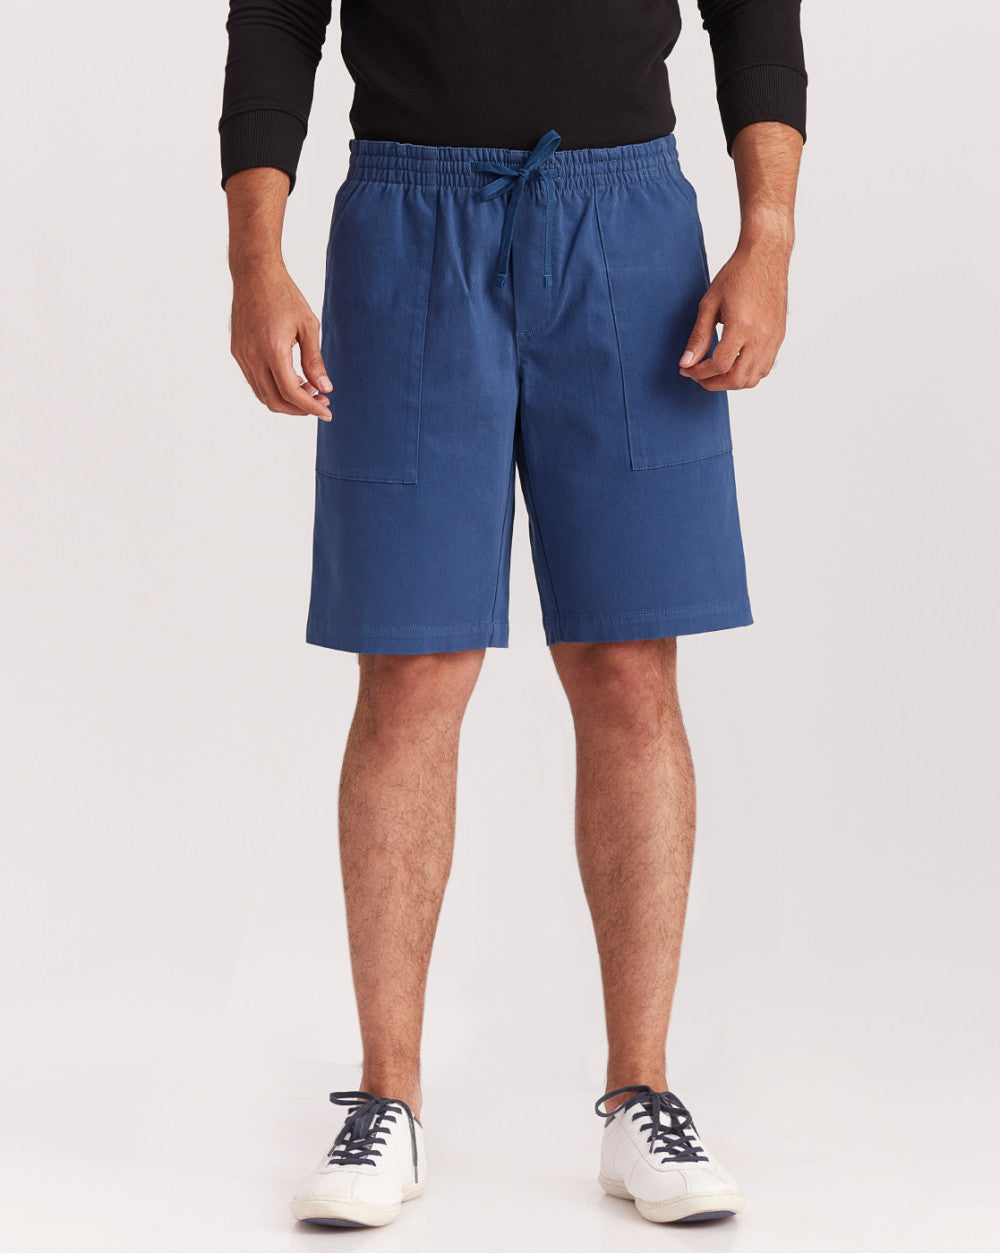 Regular Fit Comfort Elasticized Pull-On Shorts - Light Navy